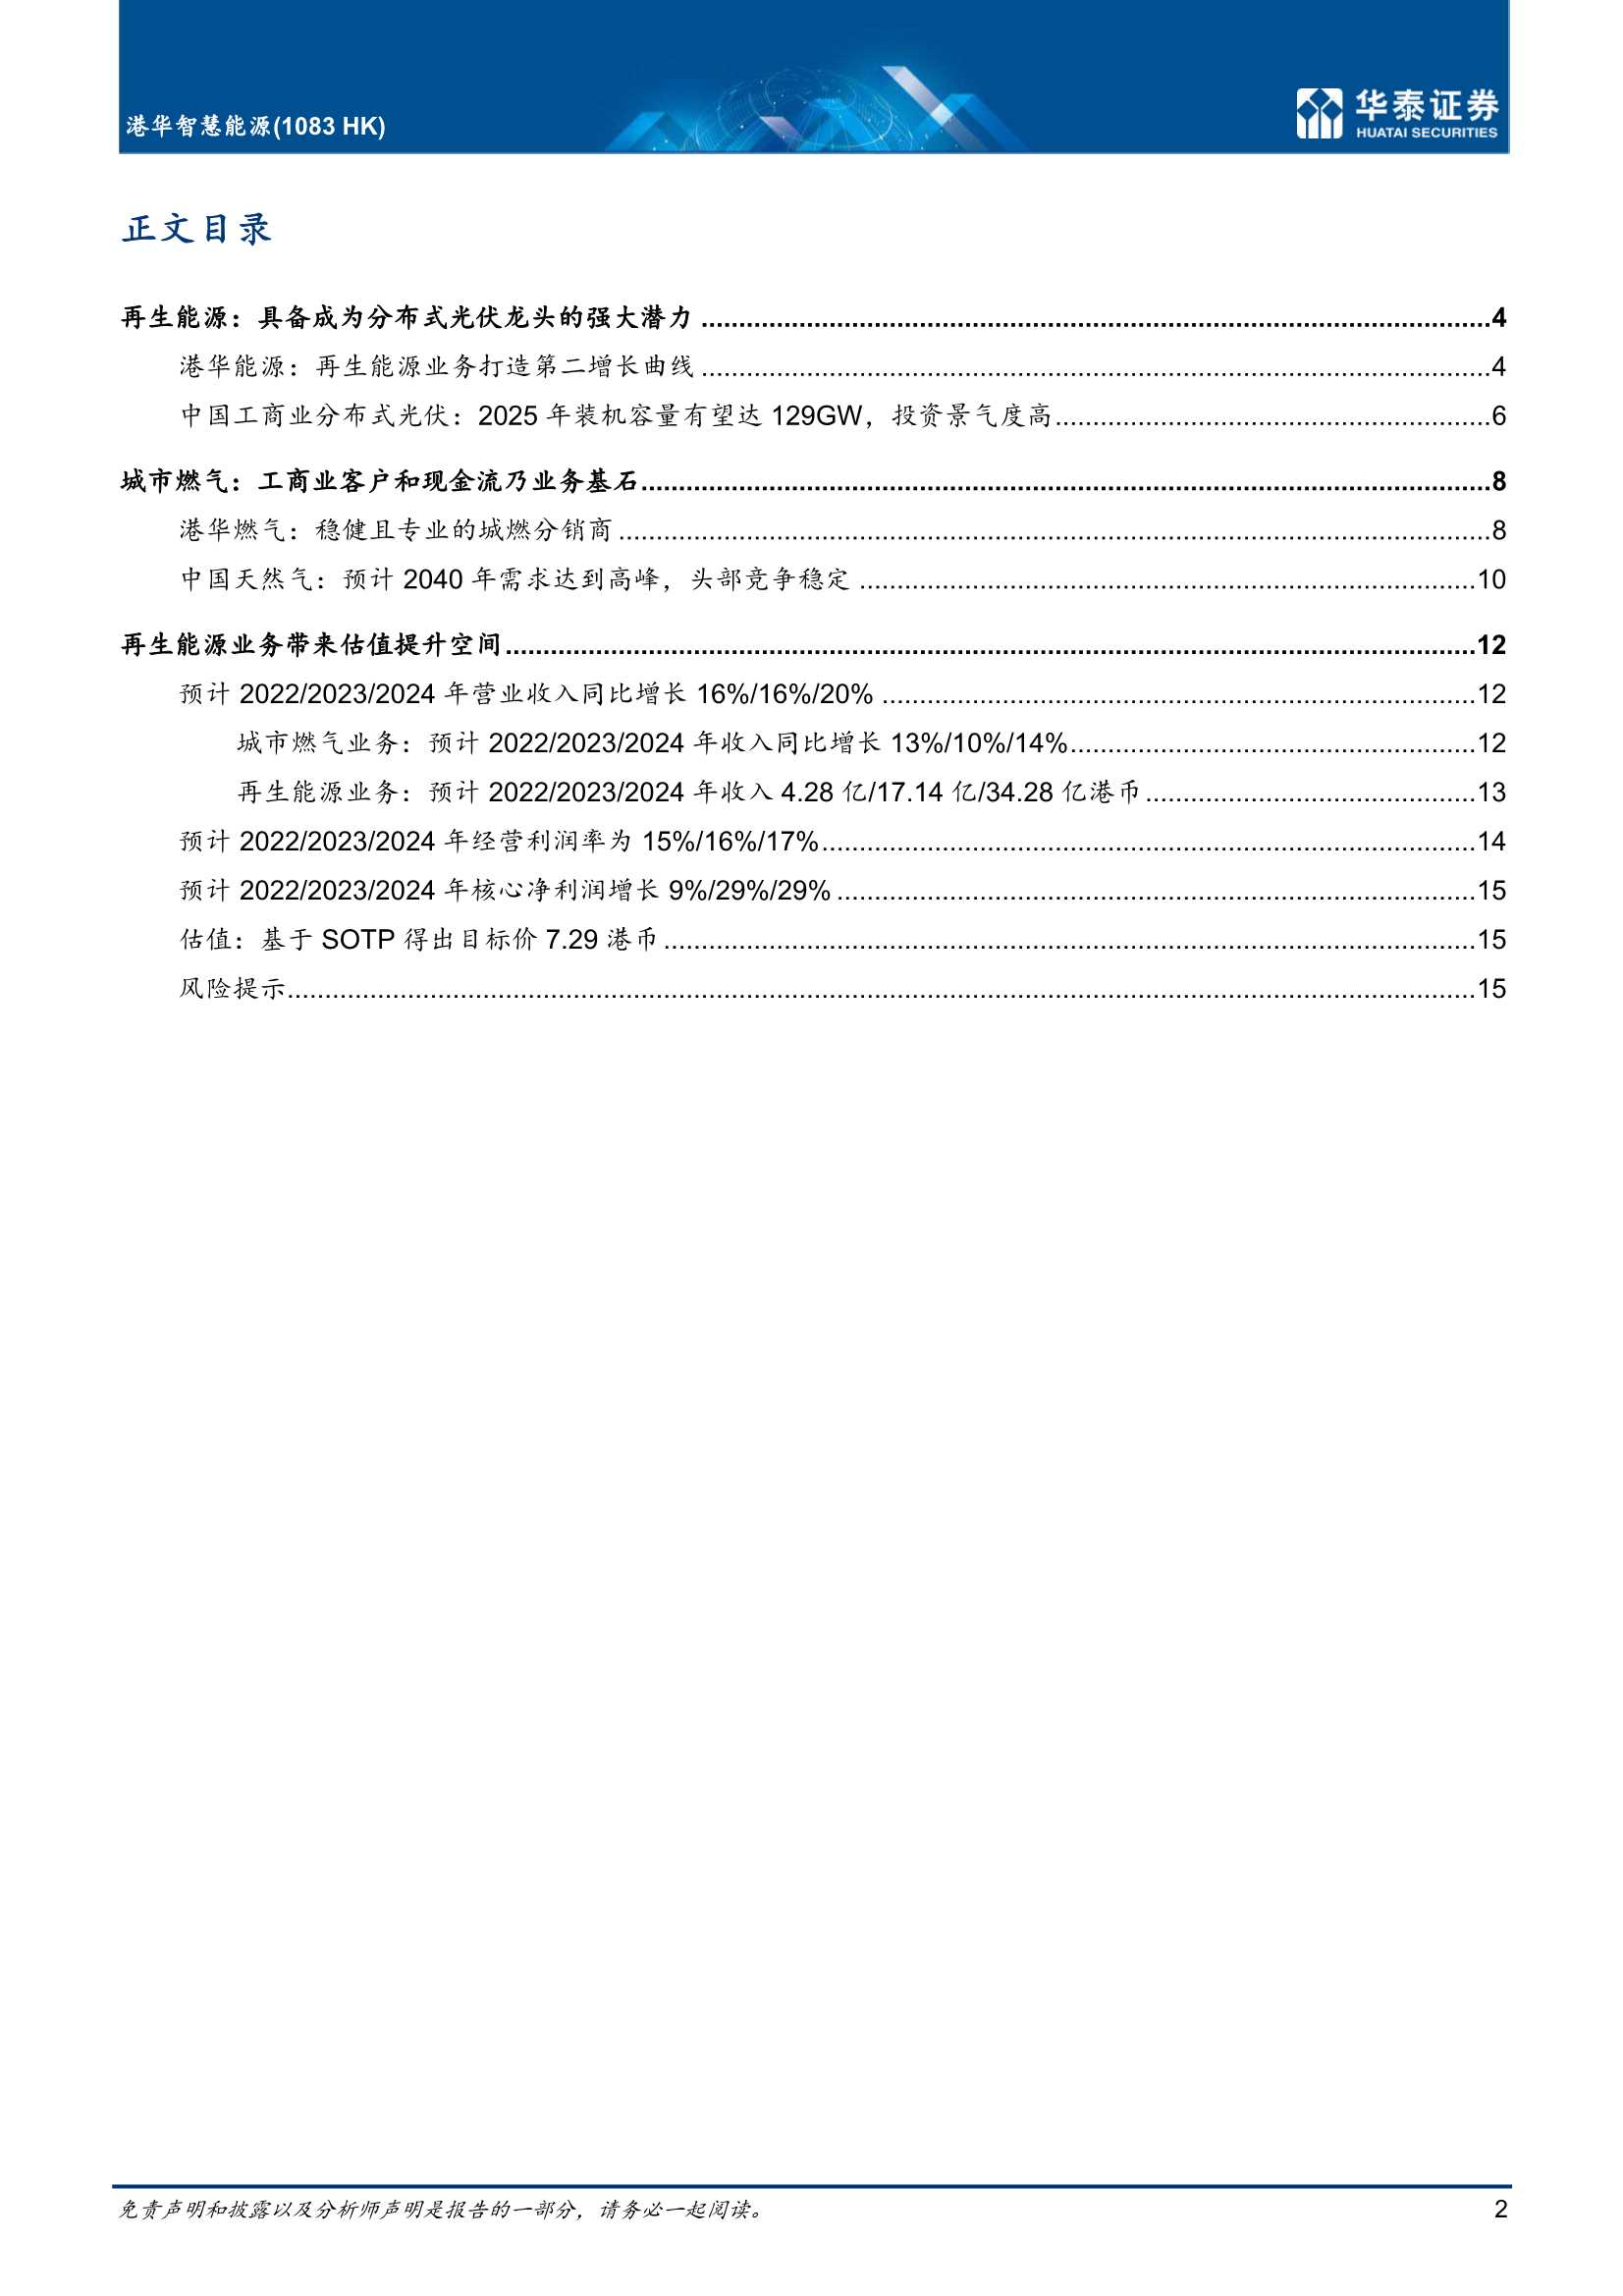 华泰证券-港华智慧能源-1083.HK-潜在的工商业分布式光伏龙头-20220324-20页